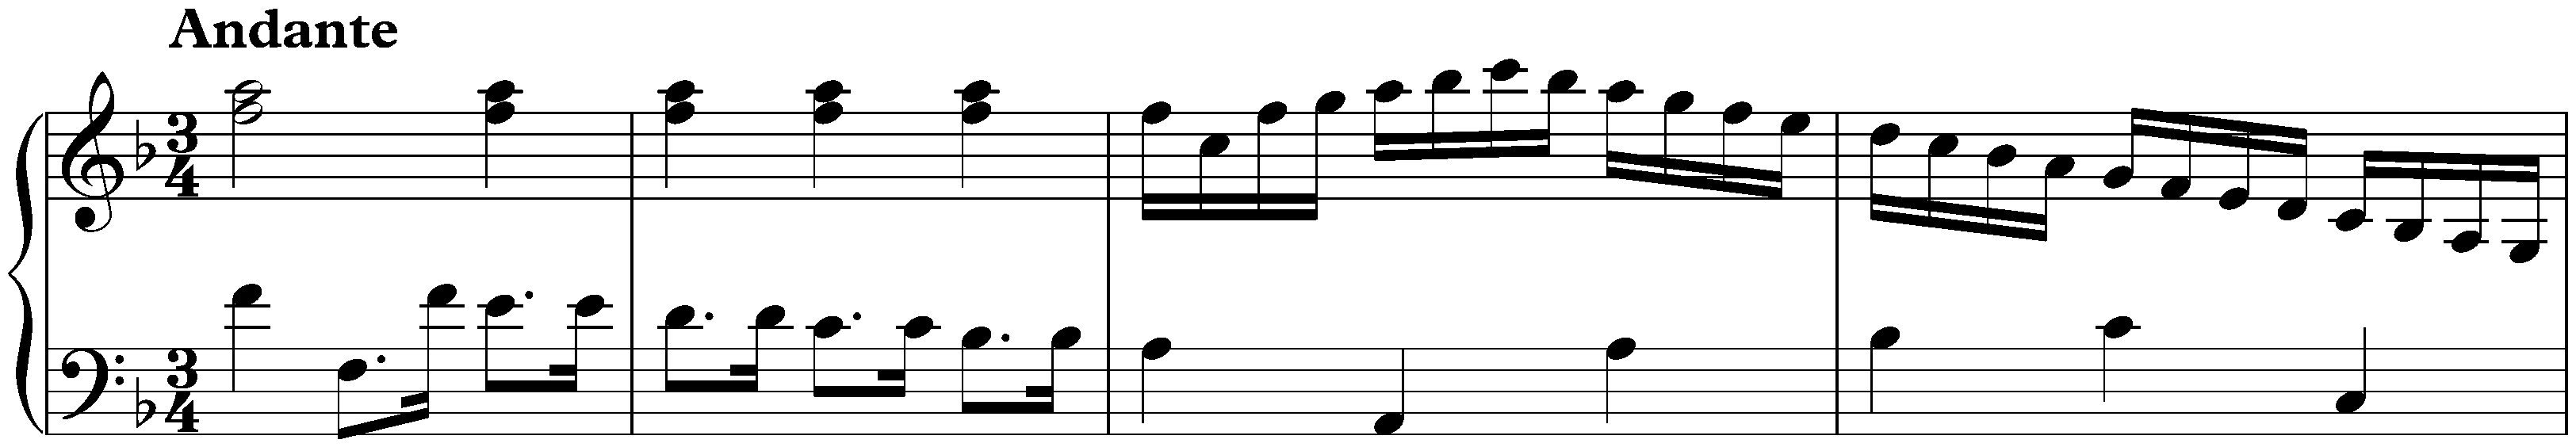 Sonata in F major, K. 296